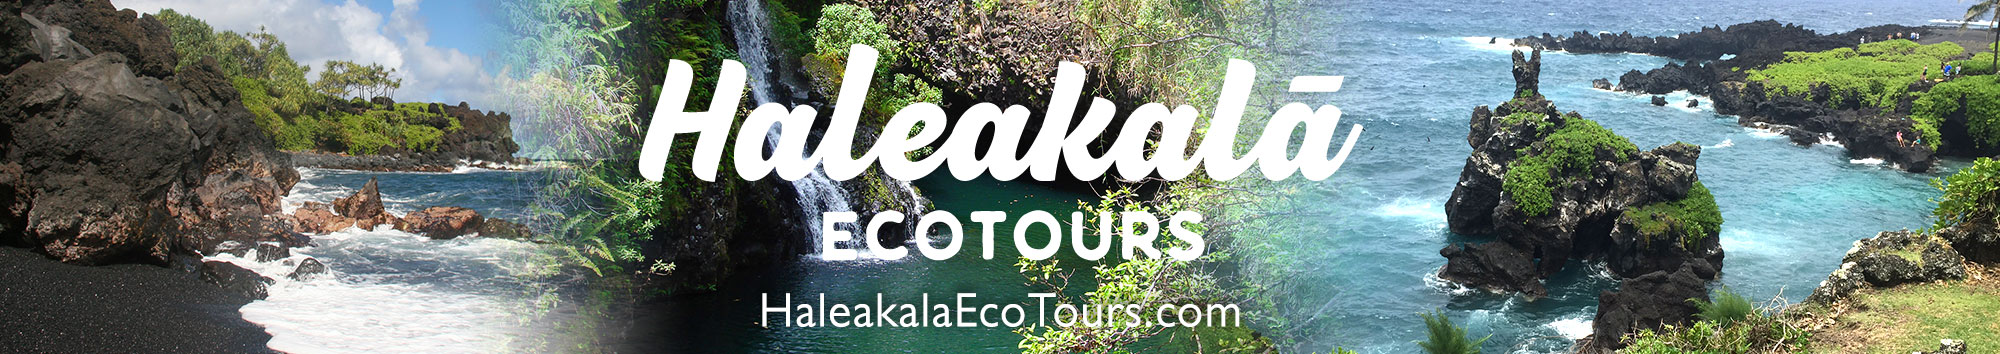 Haleakala Hana tours